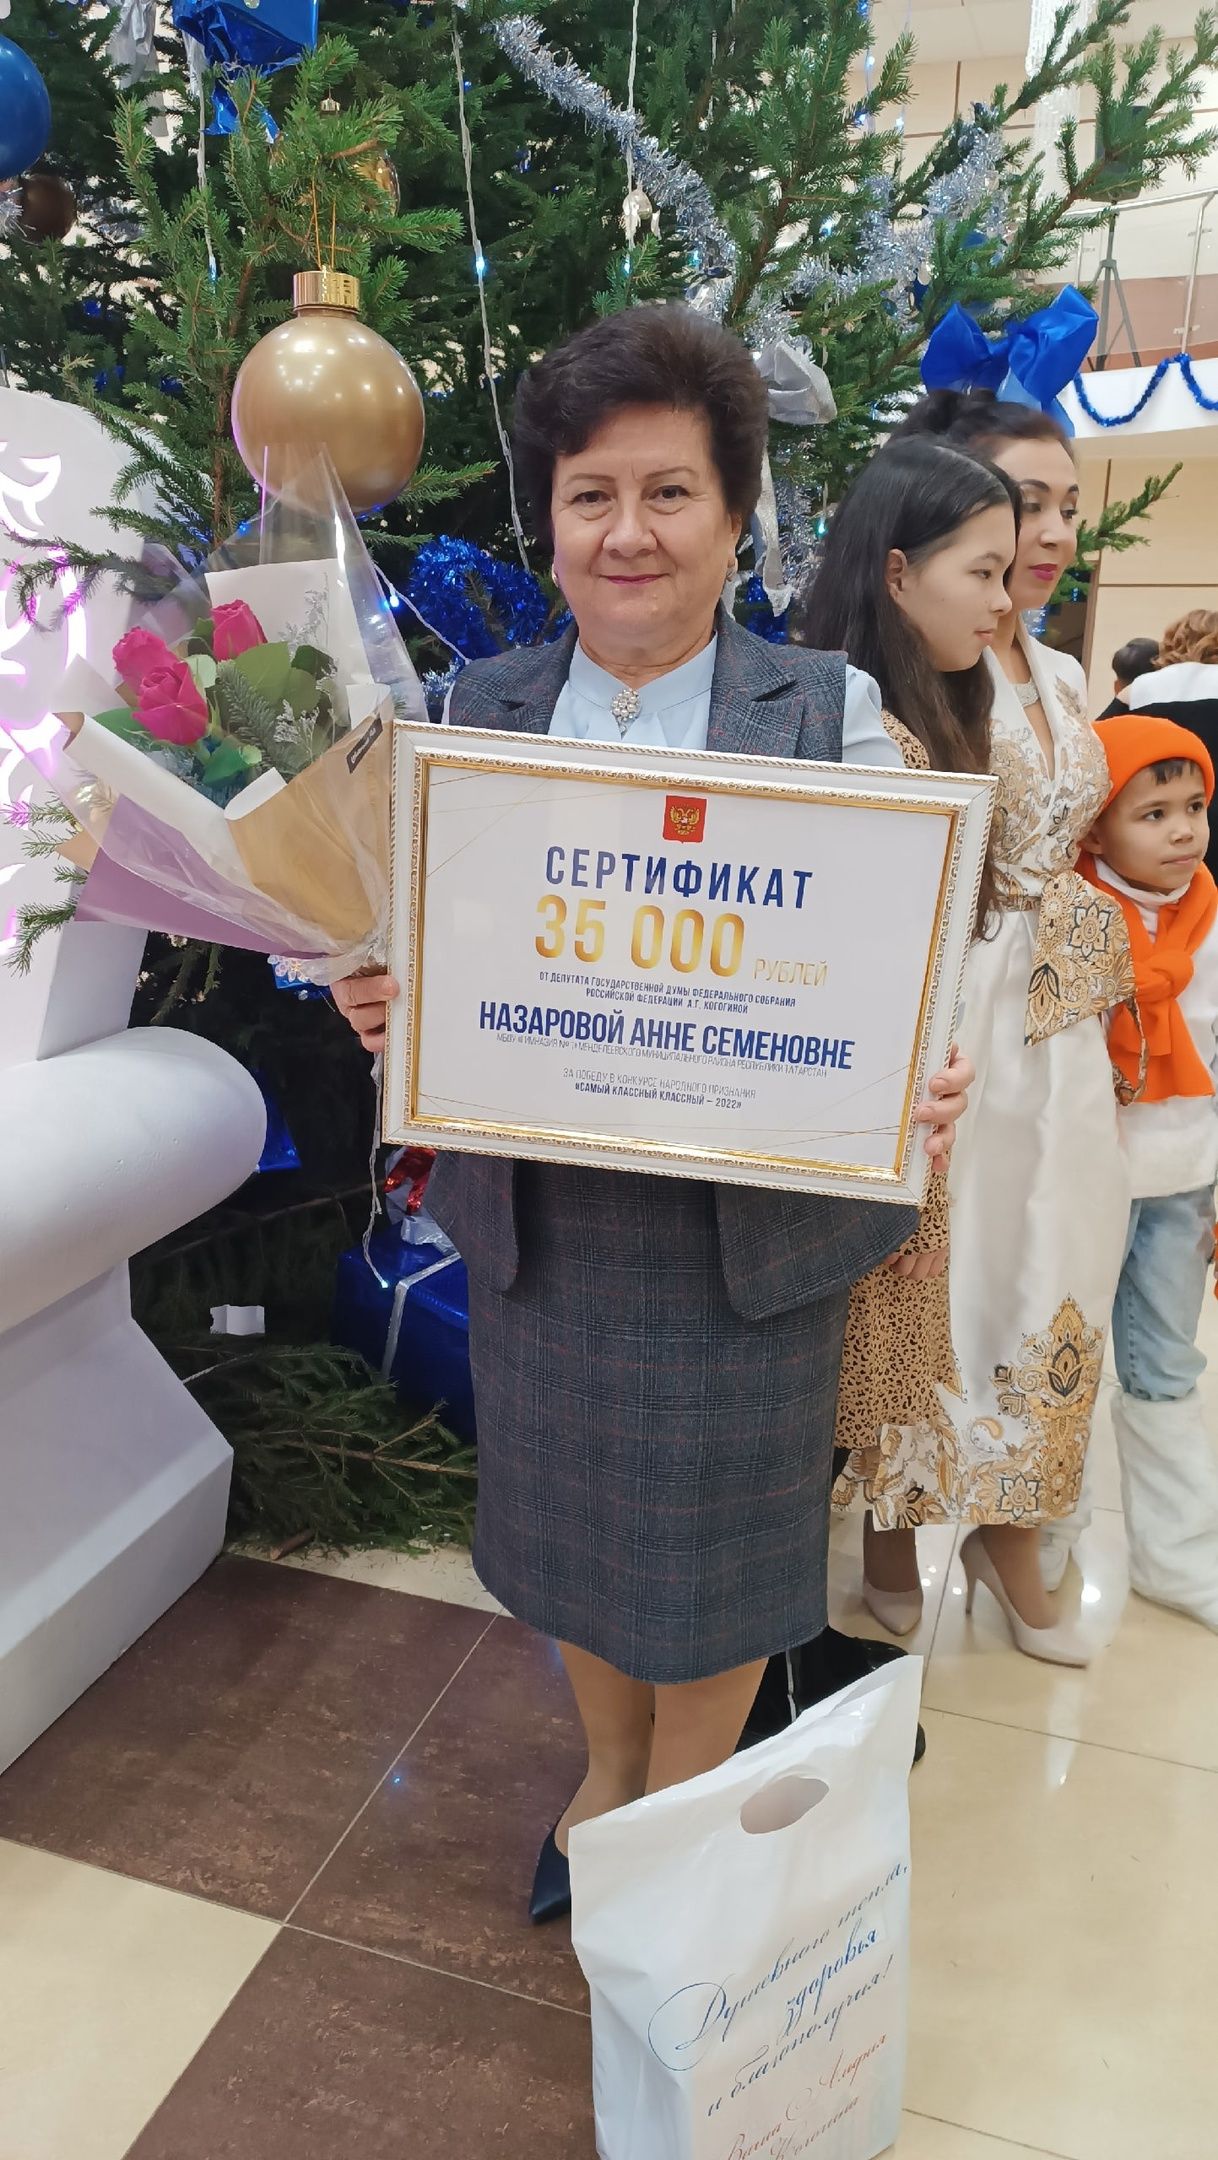 Альфия Когогина вручила главный приз победителю конкурса народного призвания